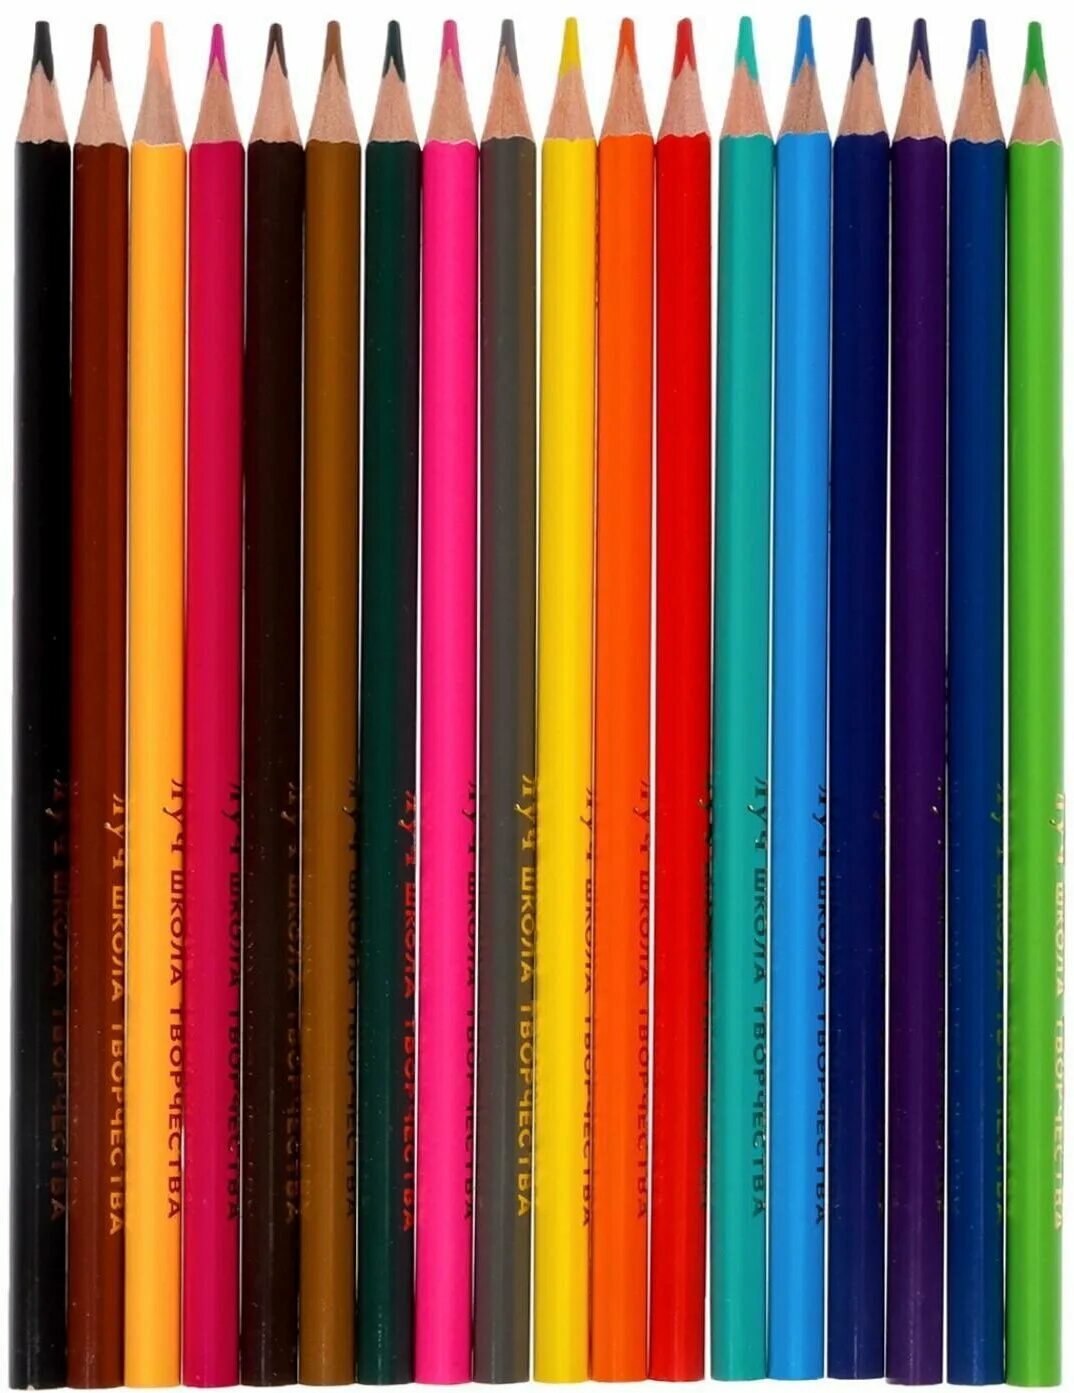 Купили 18 карандашей. Карандаши 18 цветов. Цветные карандаши Луч трёхгранные 18 цветов. Цветные карандаши 18 цветов для школы. Карандаши цветные Луч школа творчества.